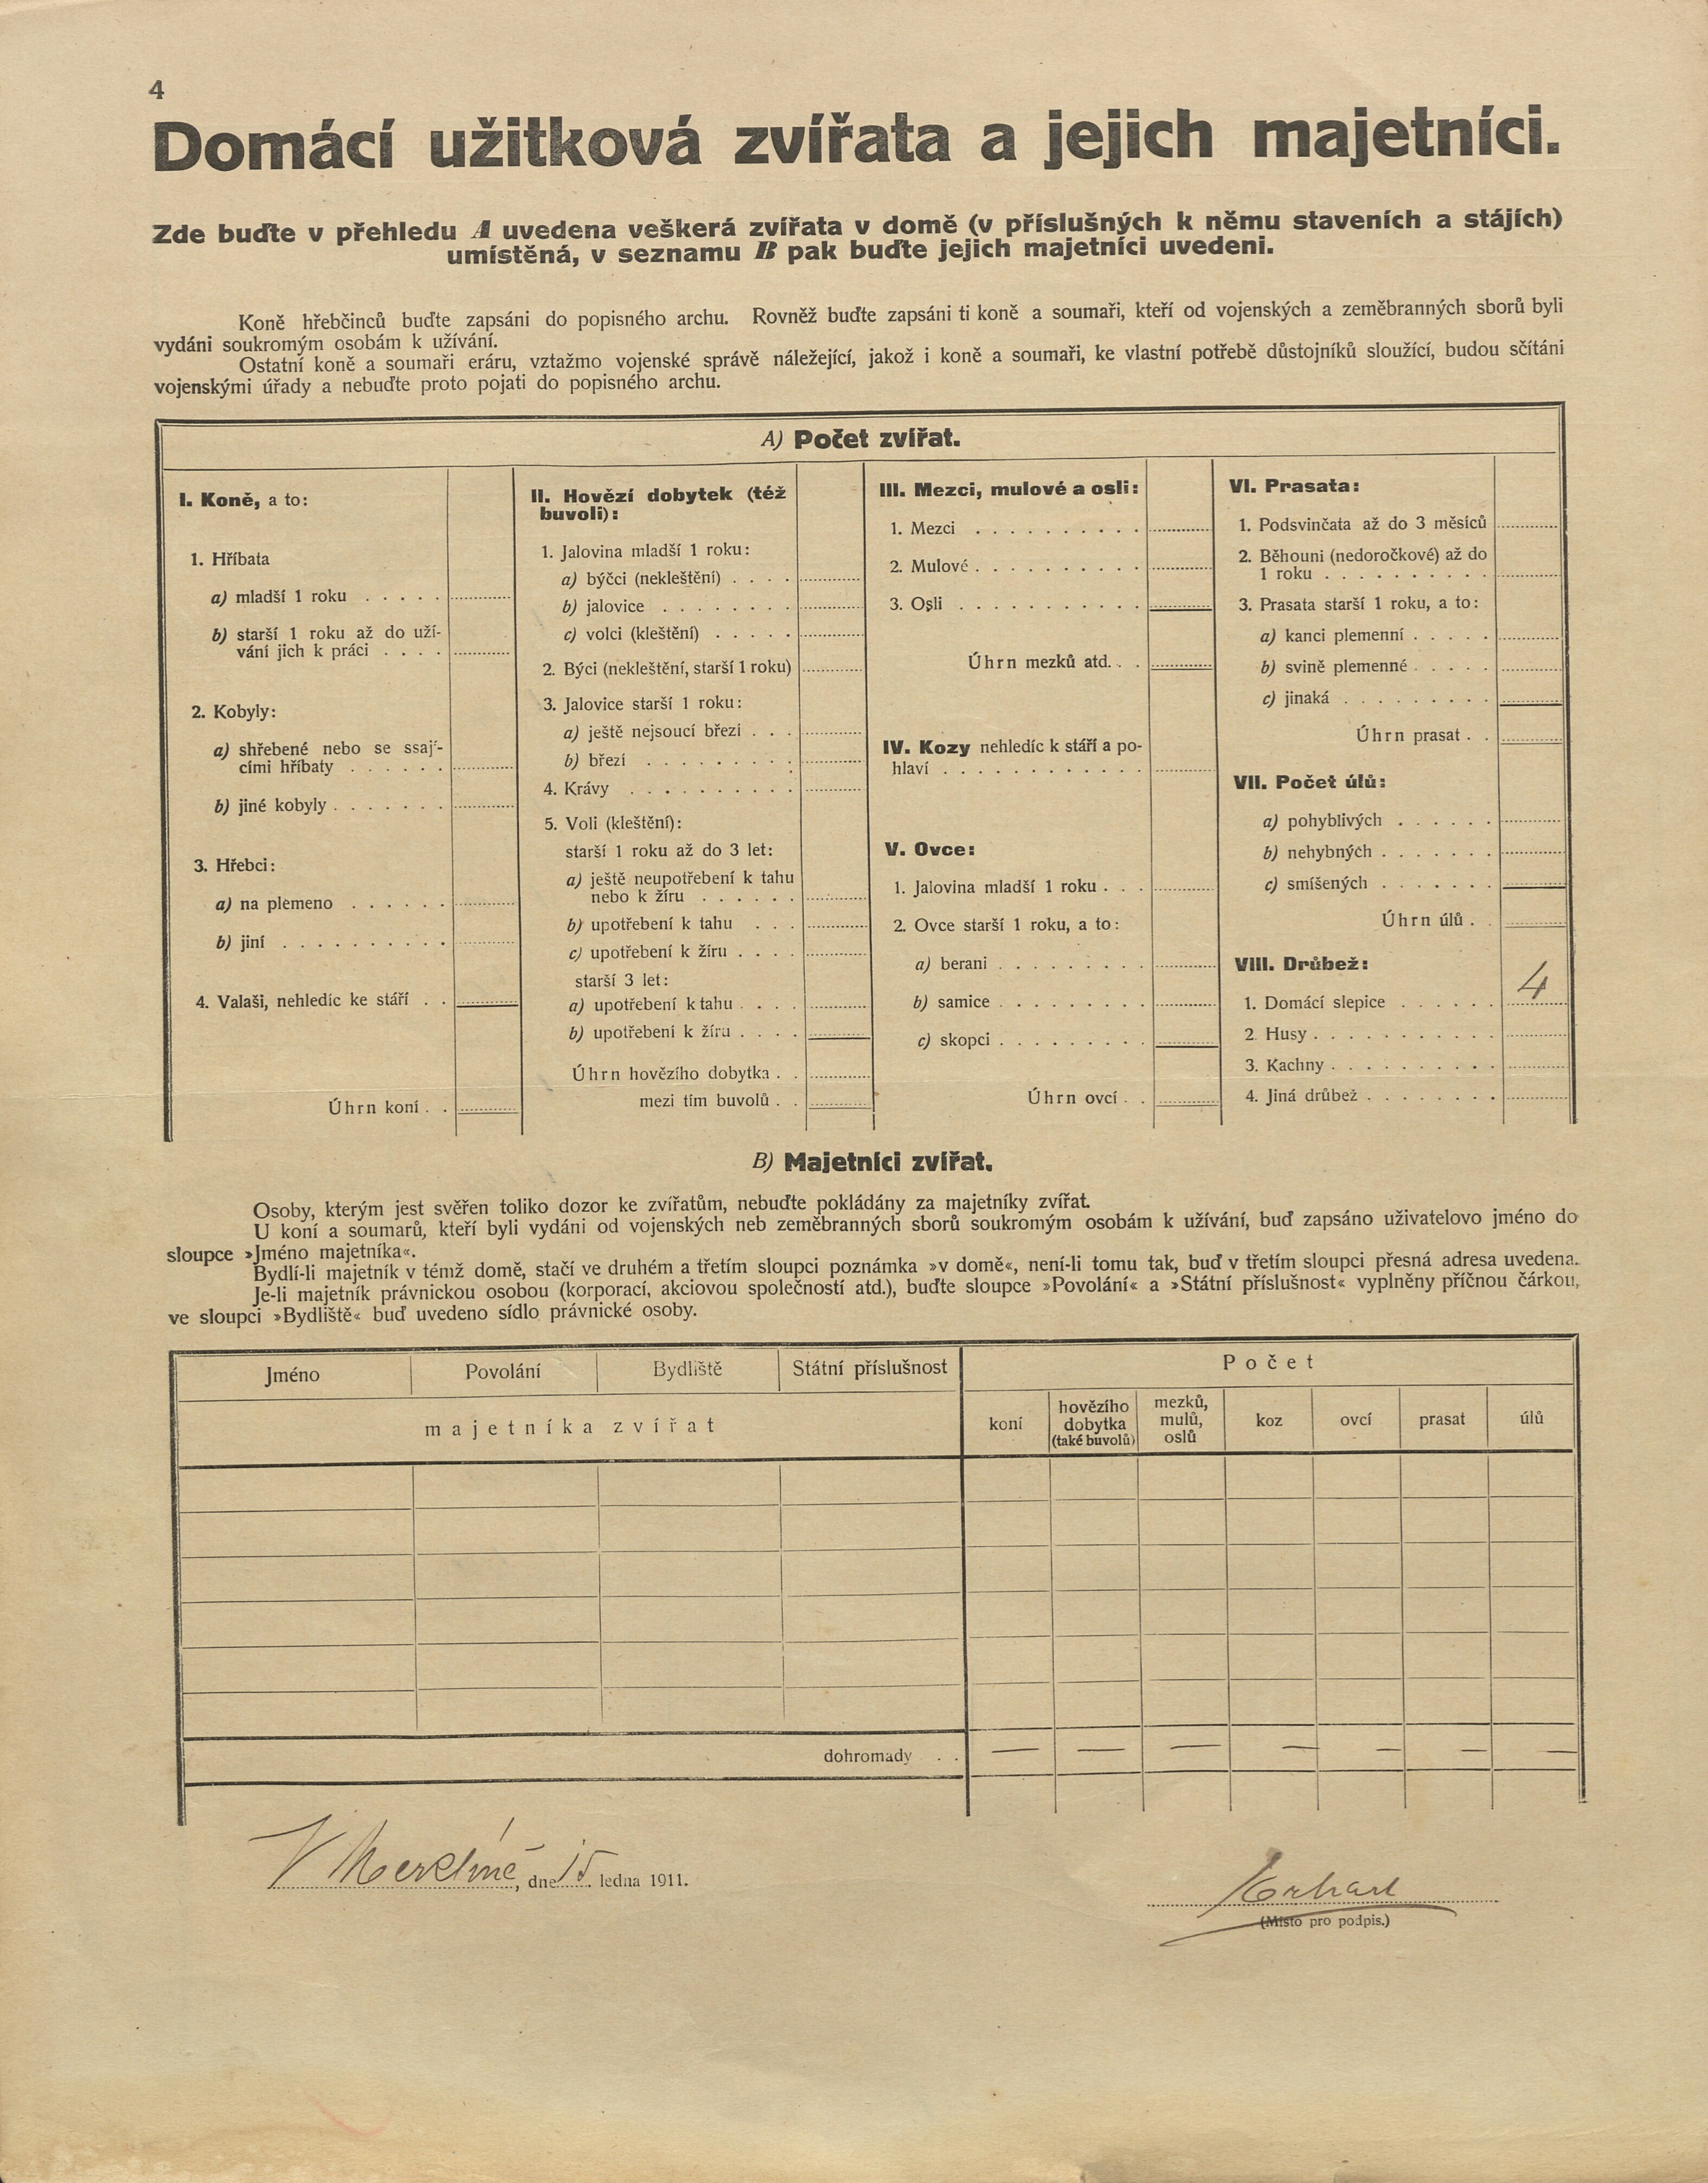 5. soap-pj_00302_census-1910-merklin-cp209_0050